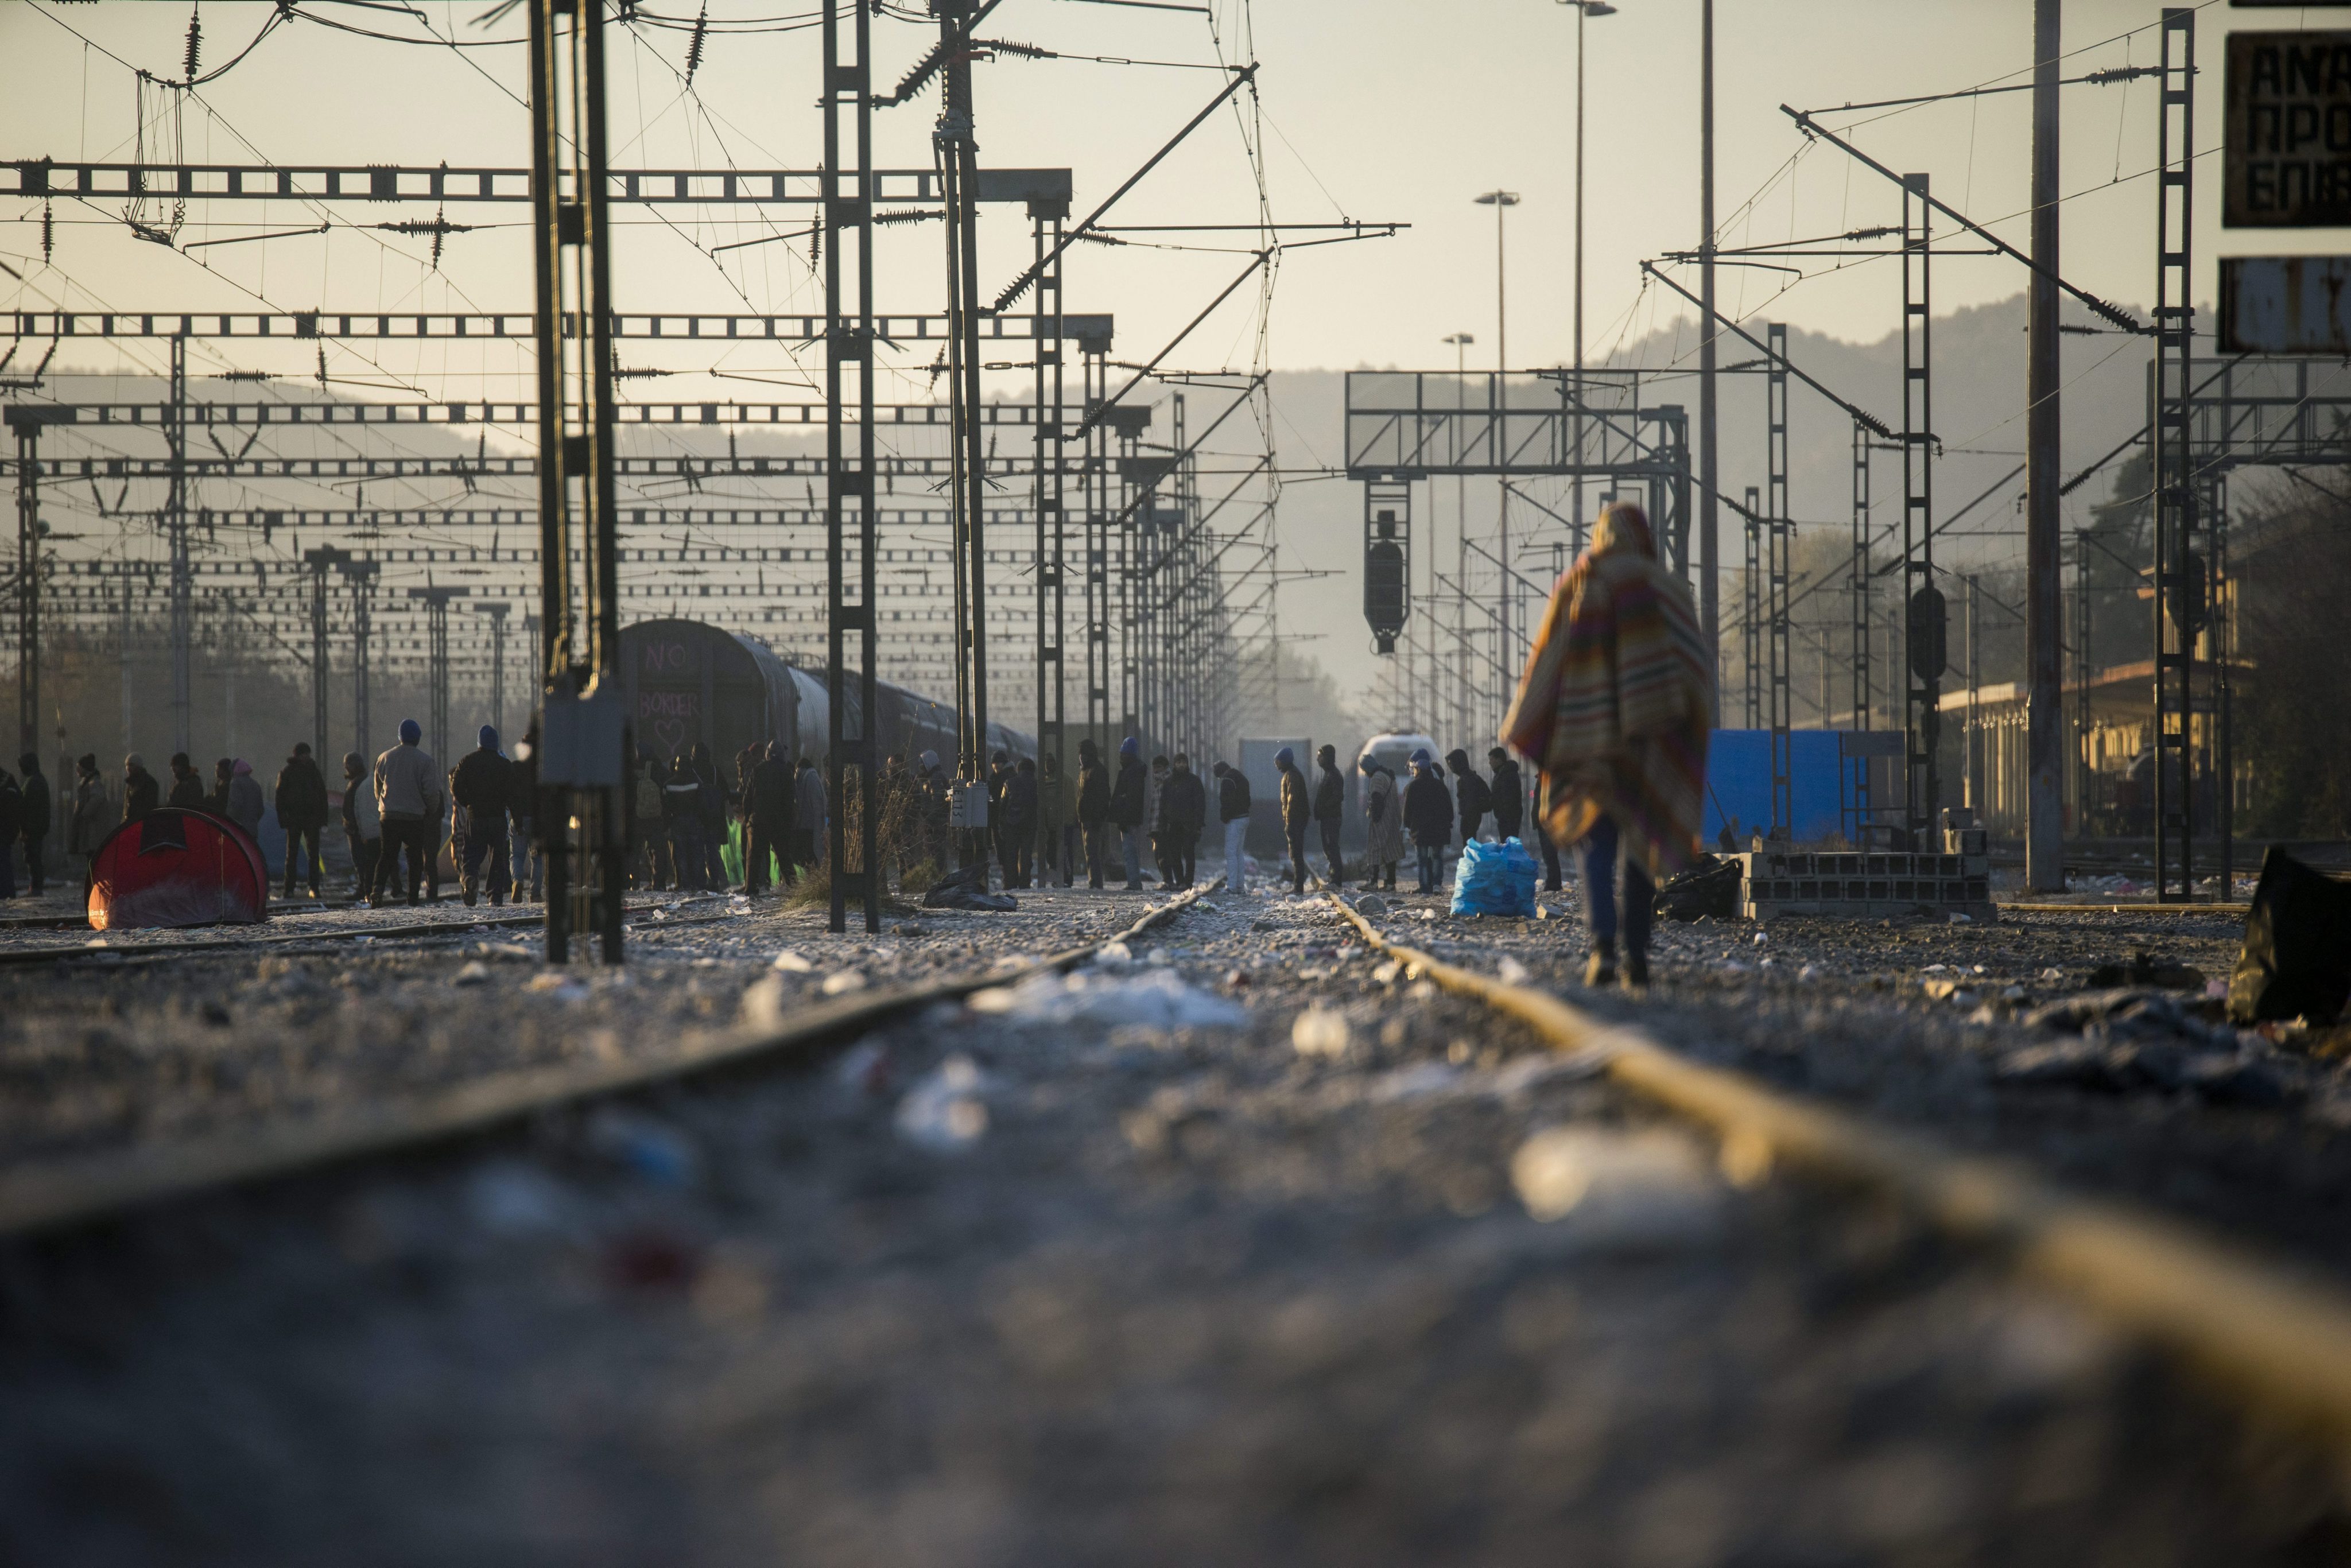 ΟΣΕ: Μετά από 70 ημέρες αποκλεισμού στην Ειδομένη πέρασε τα σύνορα το πρώτο τρένο